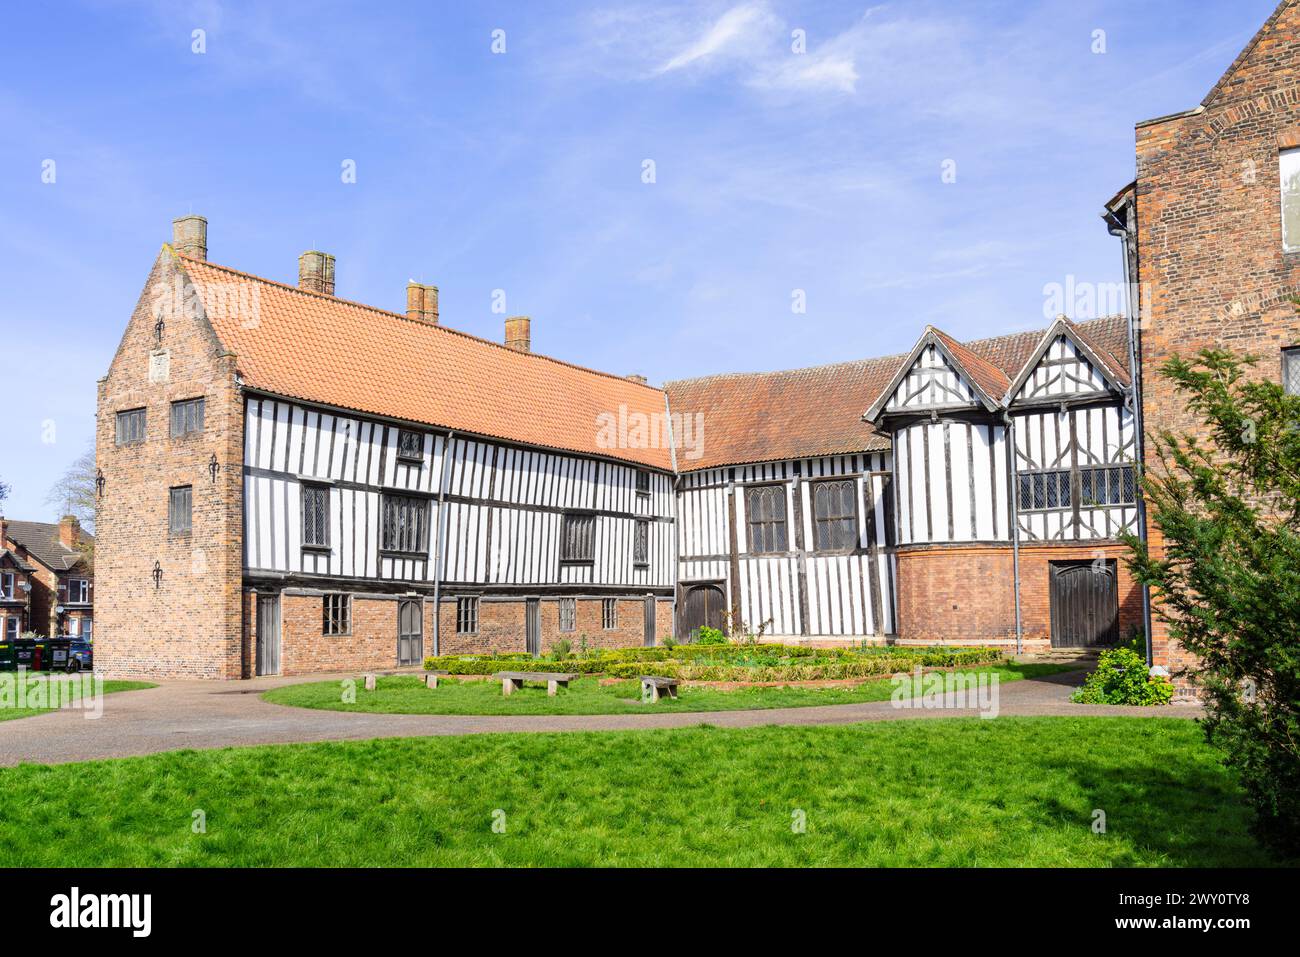 Gainsborough Old Hall manoir médiéval extérieur Gainsborough Lincolnshire Angleterre Royaume-Uni GB Europe Banque D'Images